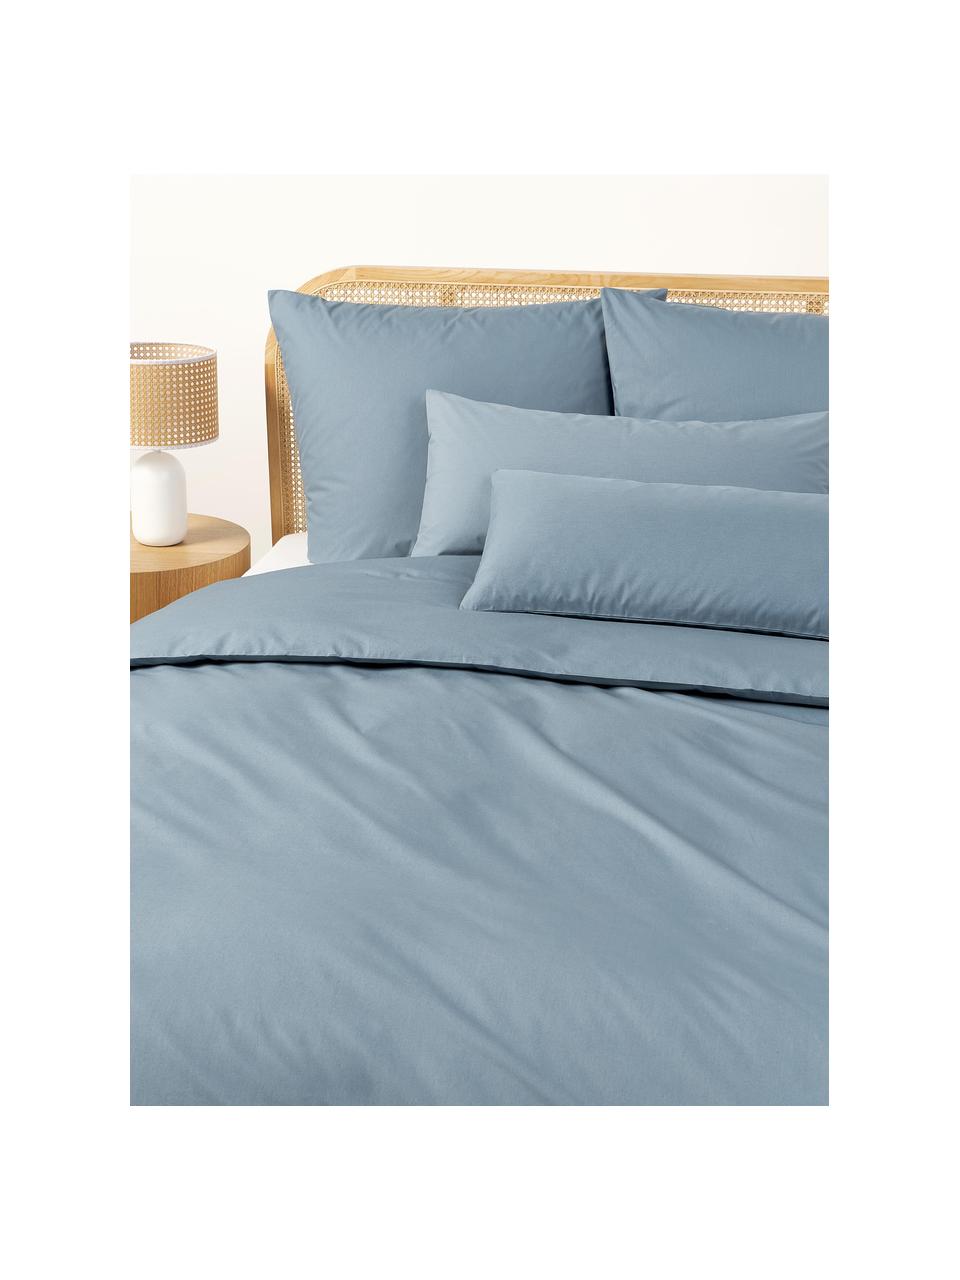 Funda de almohada de percal Elsie, Gris azulado, An 45 x L 110 cm